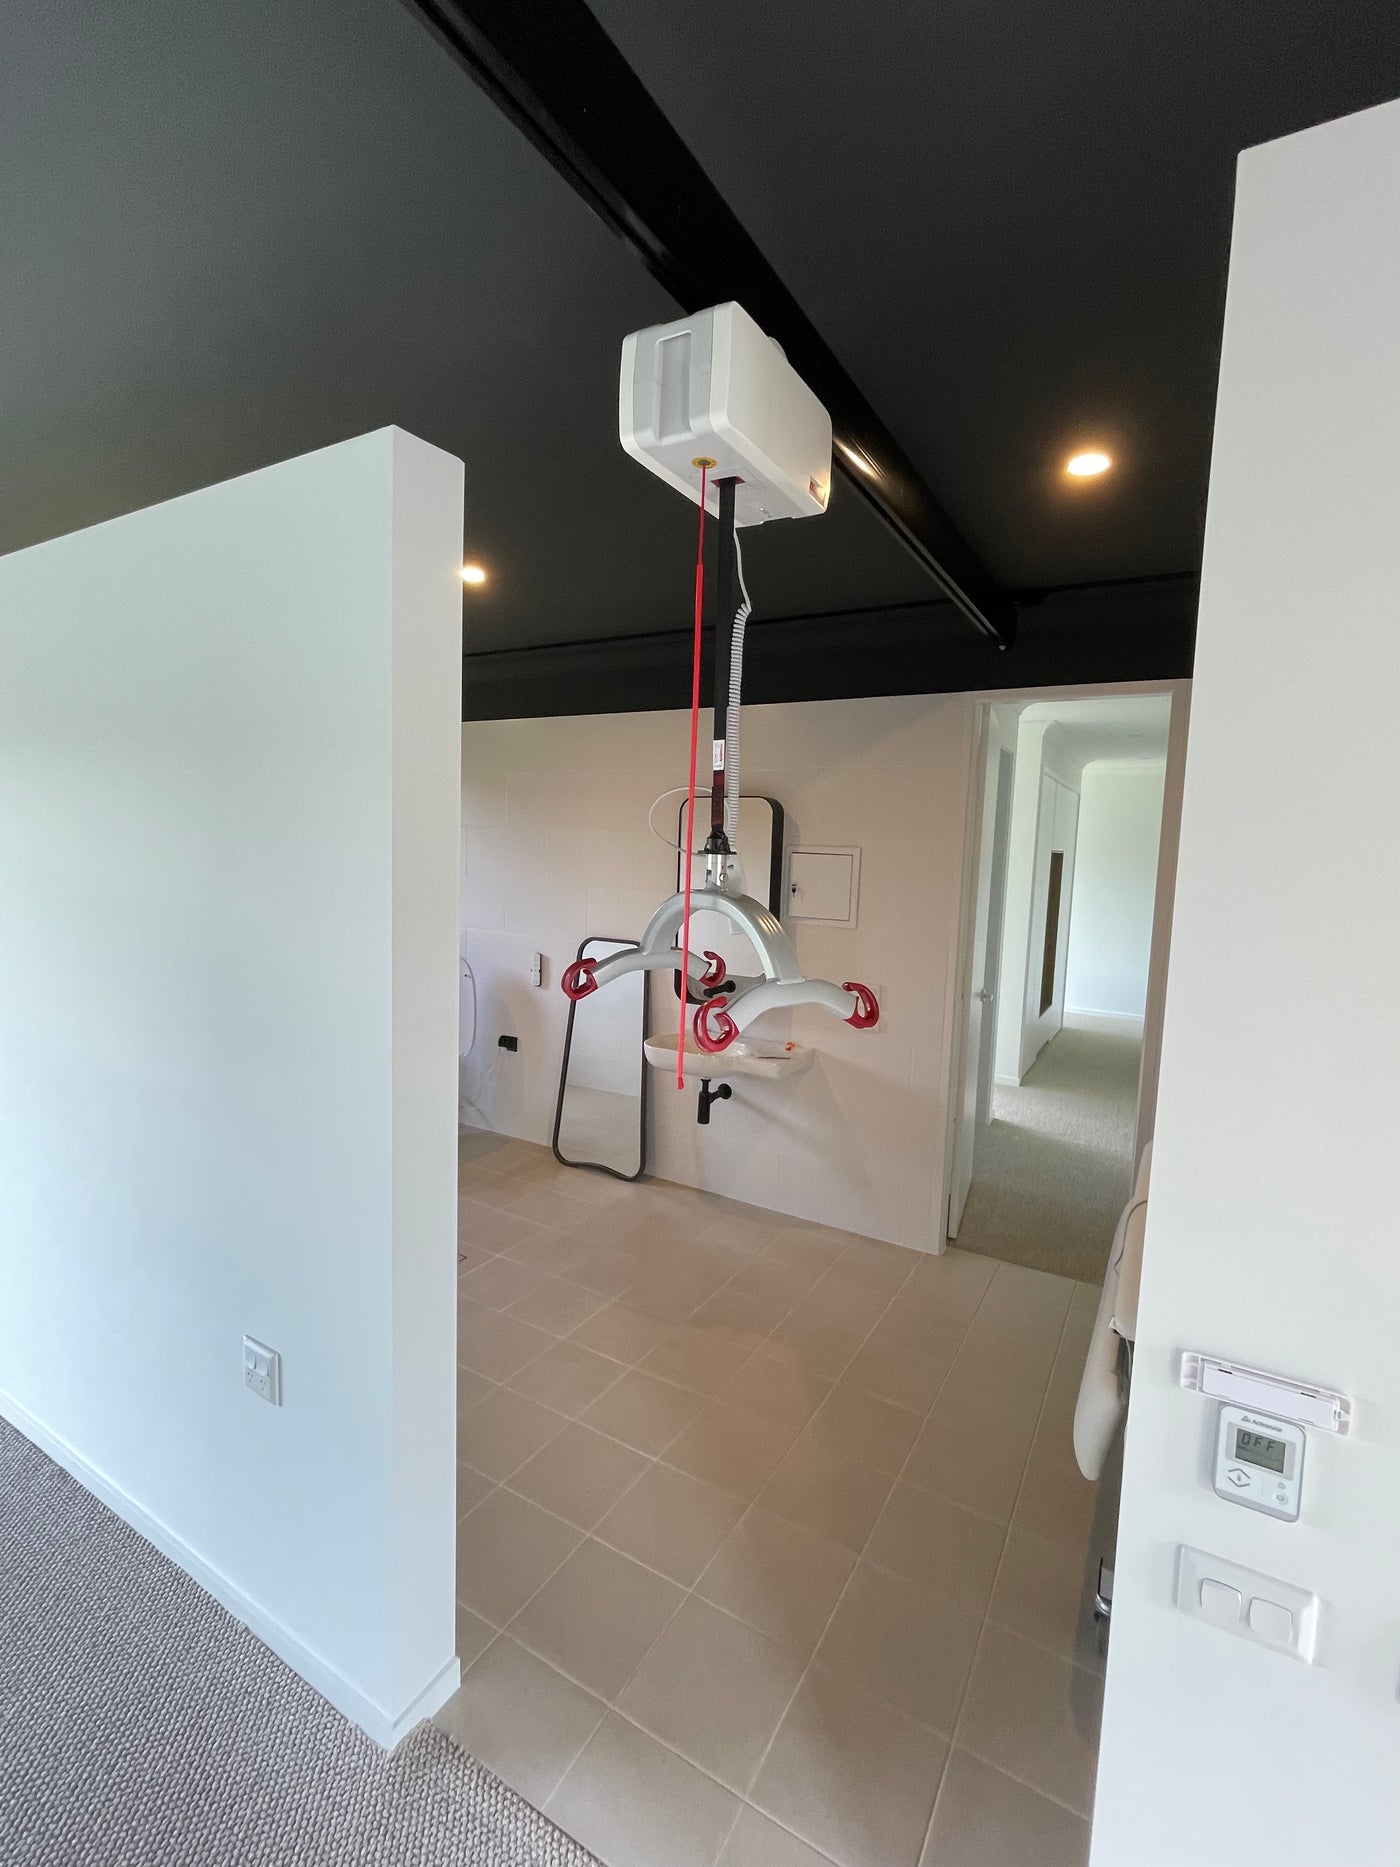 ceiling hoist solution